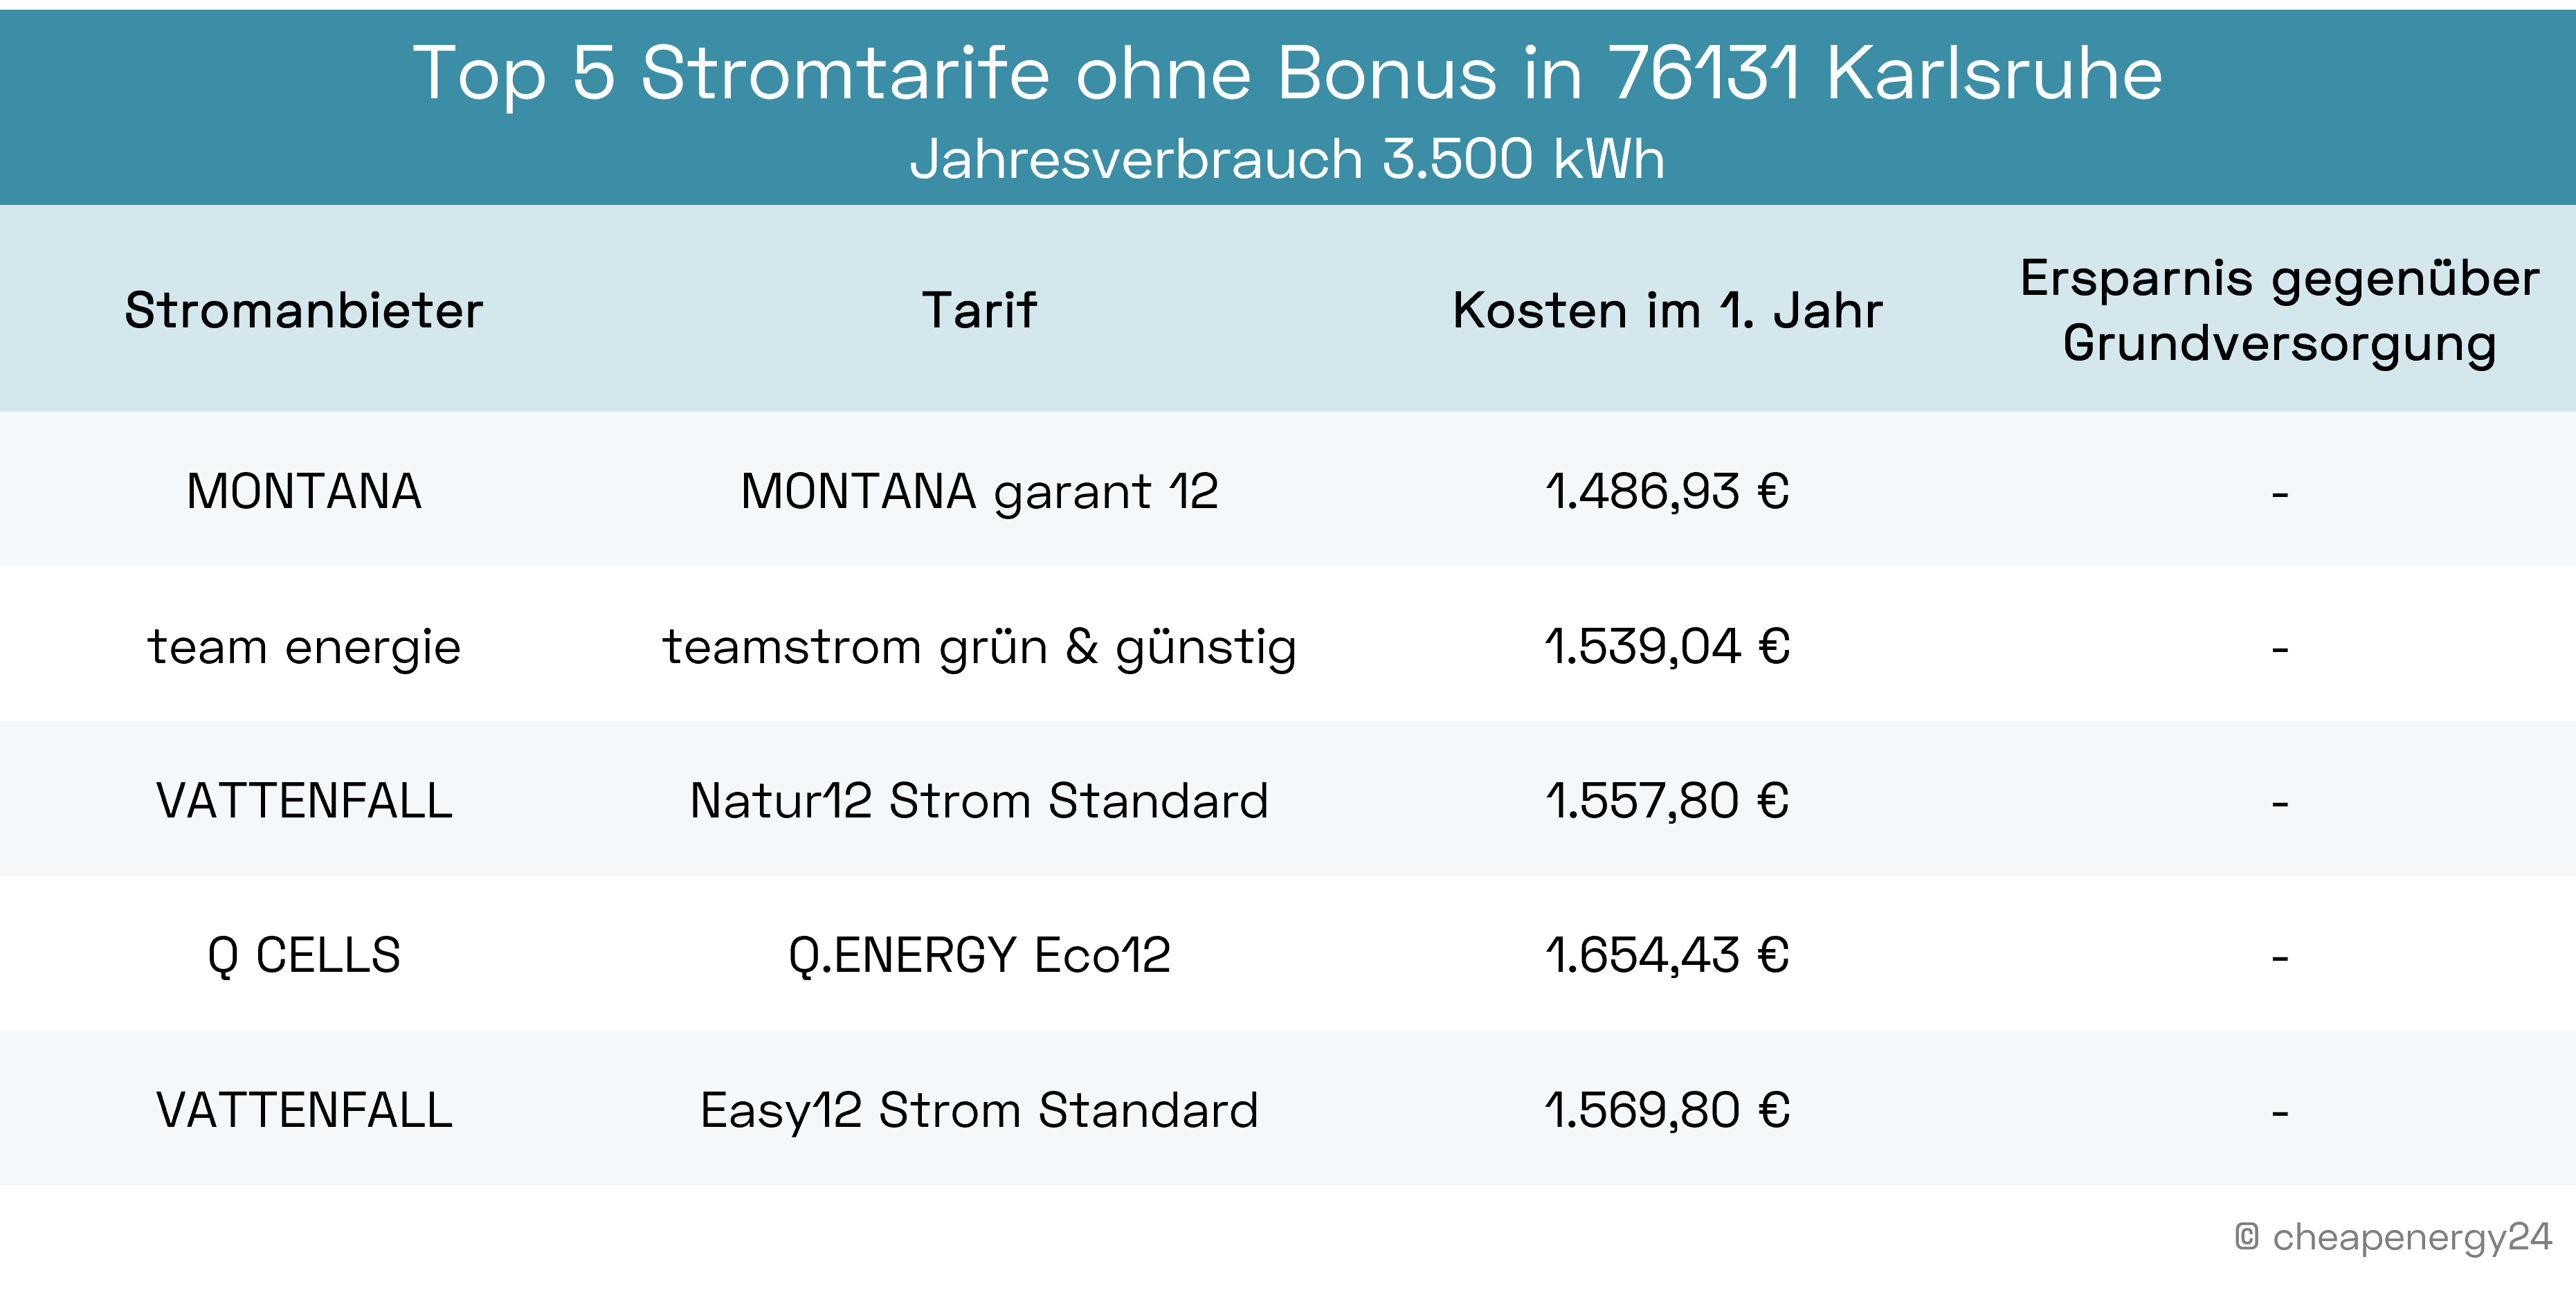 Beste Stromtarife ohne Bonus Karlsruhe